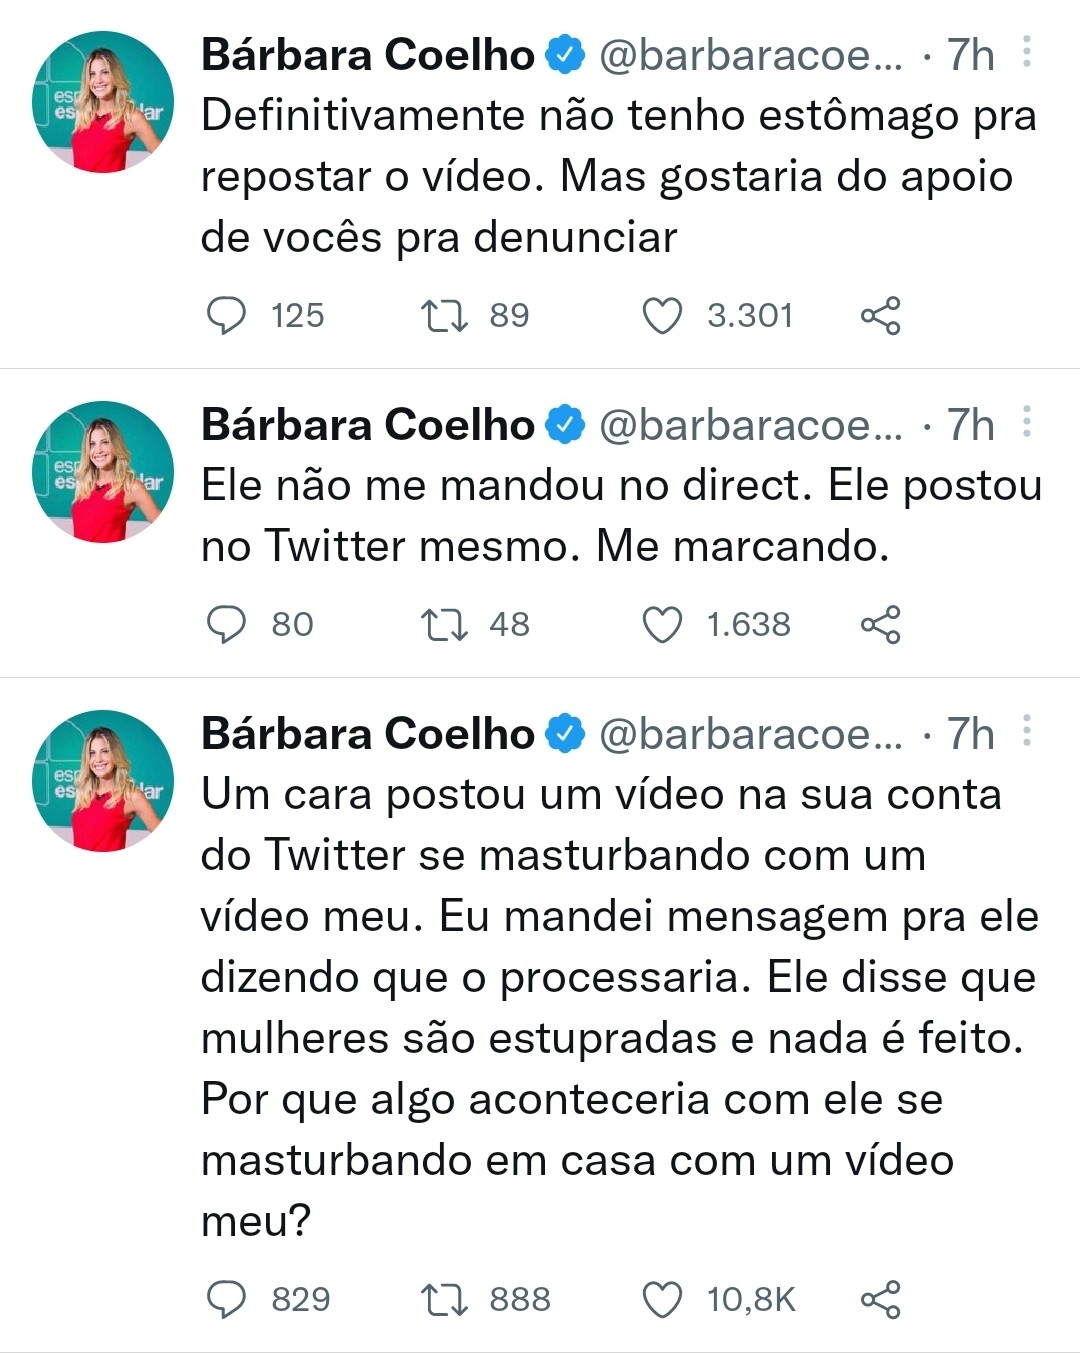 Bárbara Coelho pede ajuda para denunciar vídeo de homem que se masturbou com vídeo dela (Foto: Reprodução/Twitter)